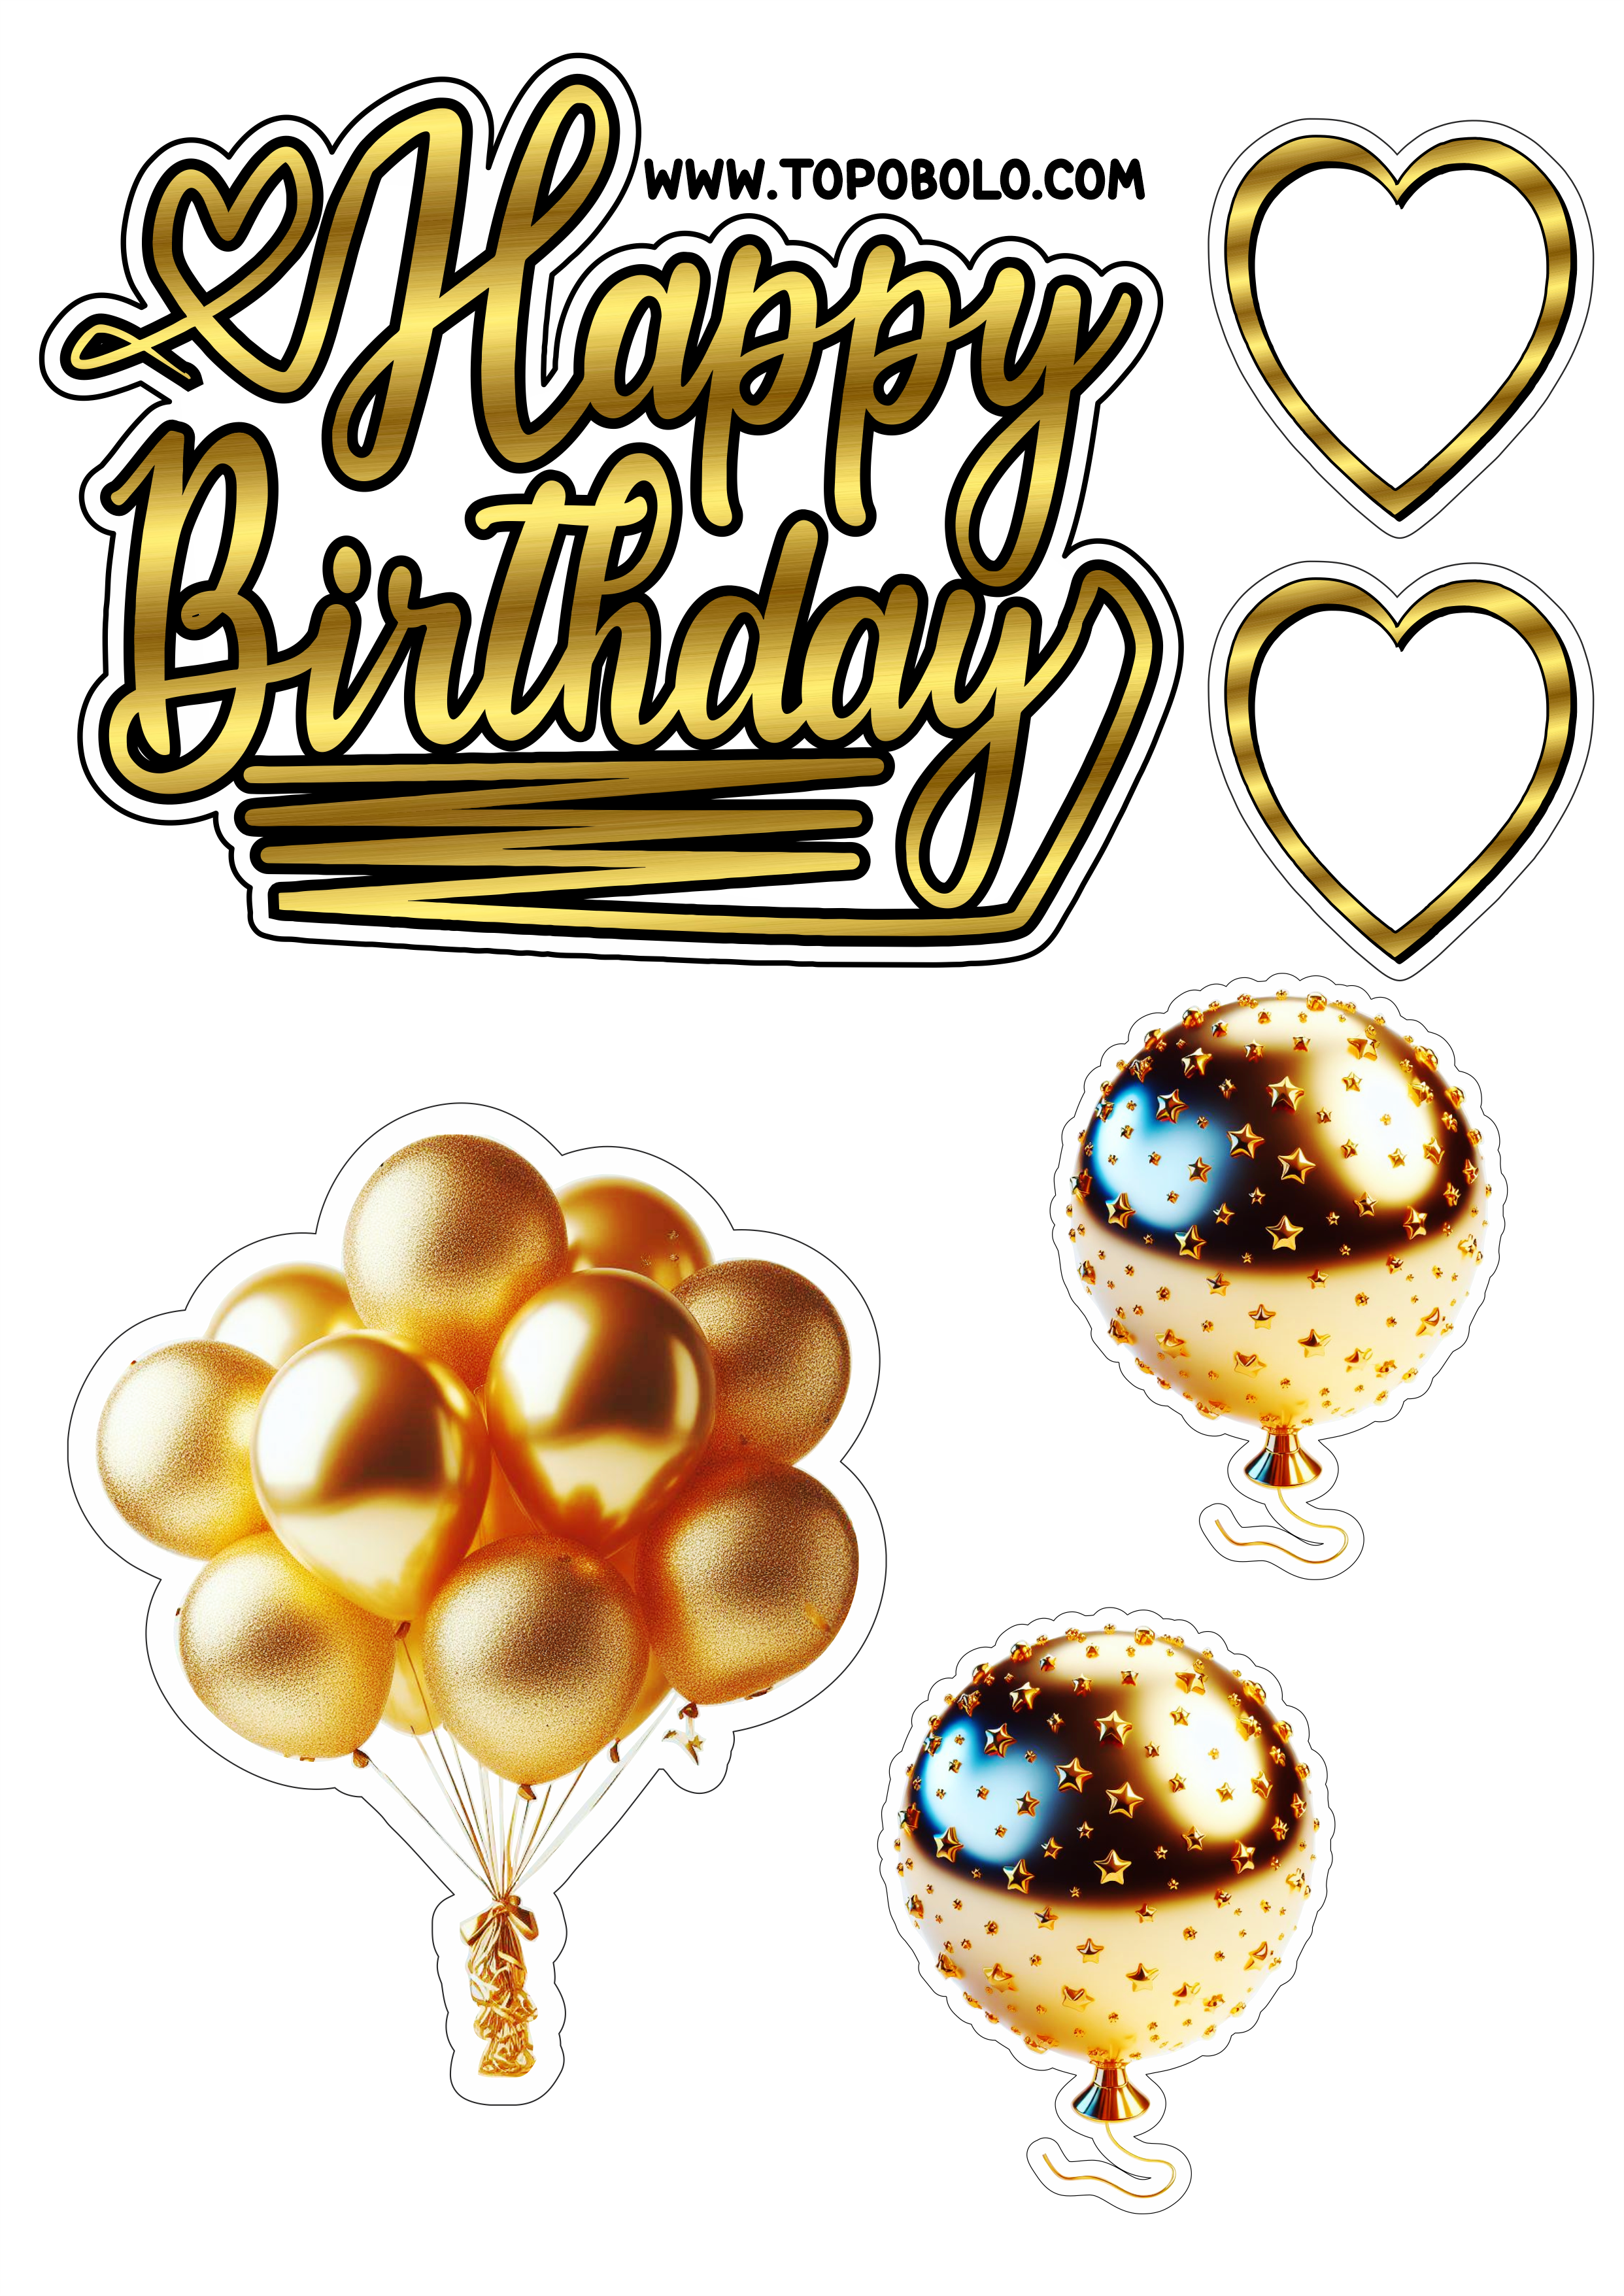 Topo de bolo para imprimir Happy Birthday aniversário dourado com corações e balões artigos personalizados grátis png